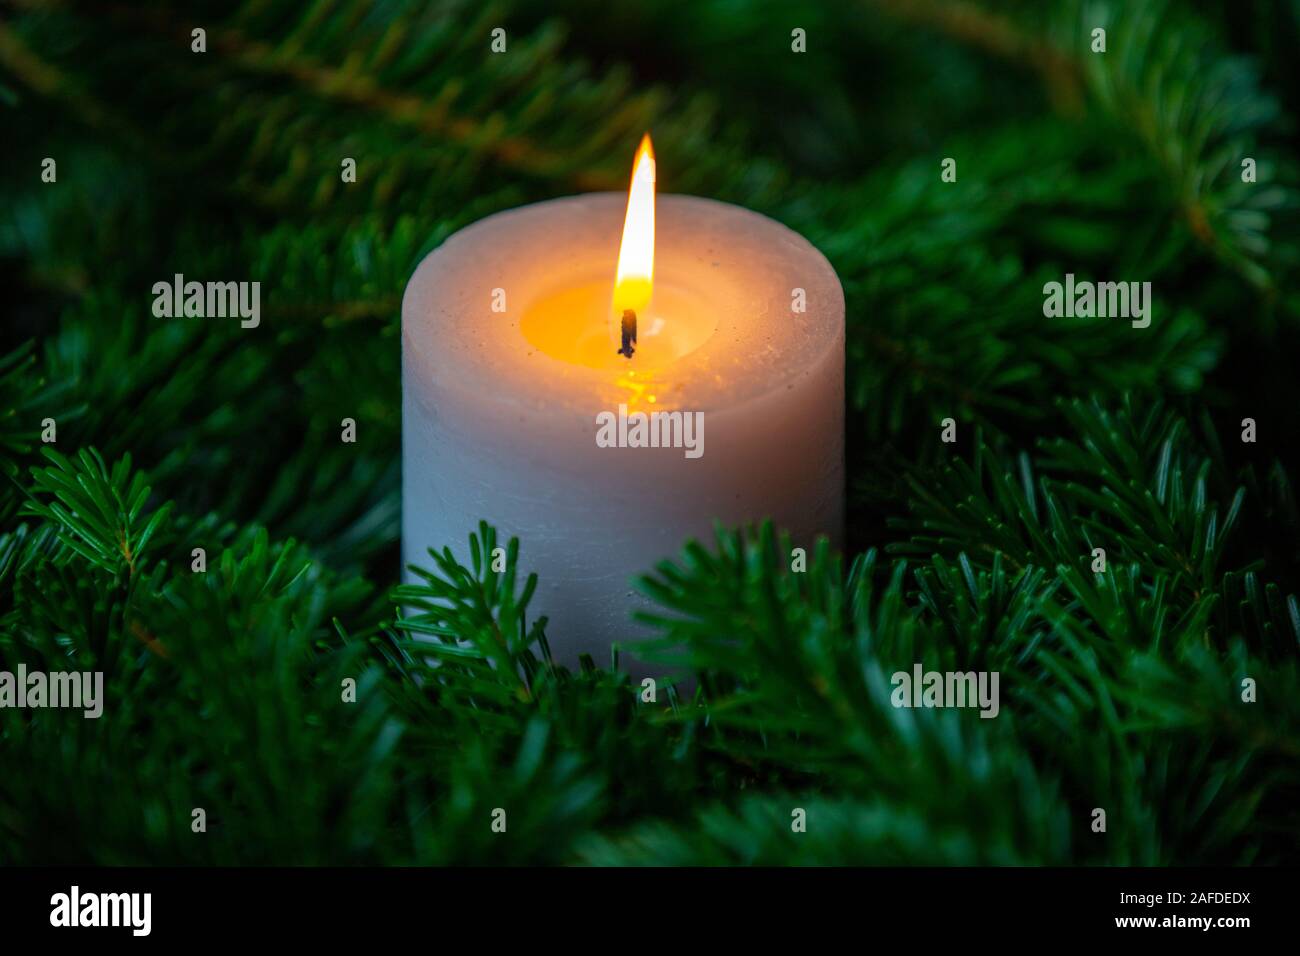 Weihnachtsmotiv, Tapeten mit weißen brennende Kerze von nordmanntanne  Zweigen umgeben Stockfotografie - Alamy